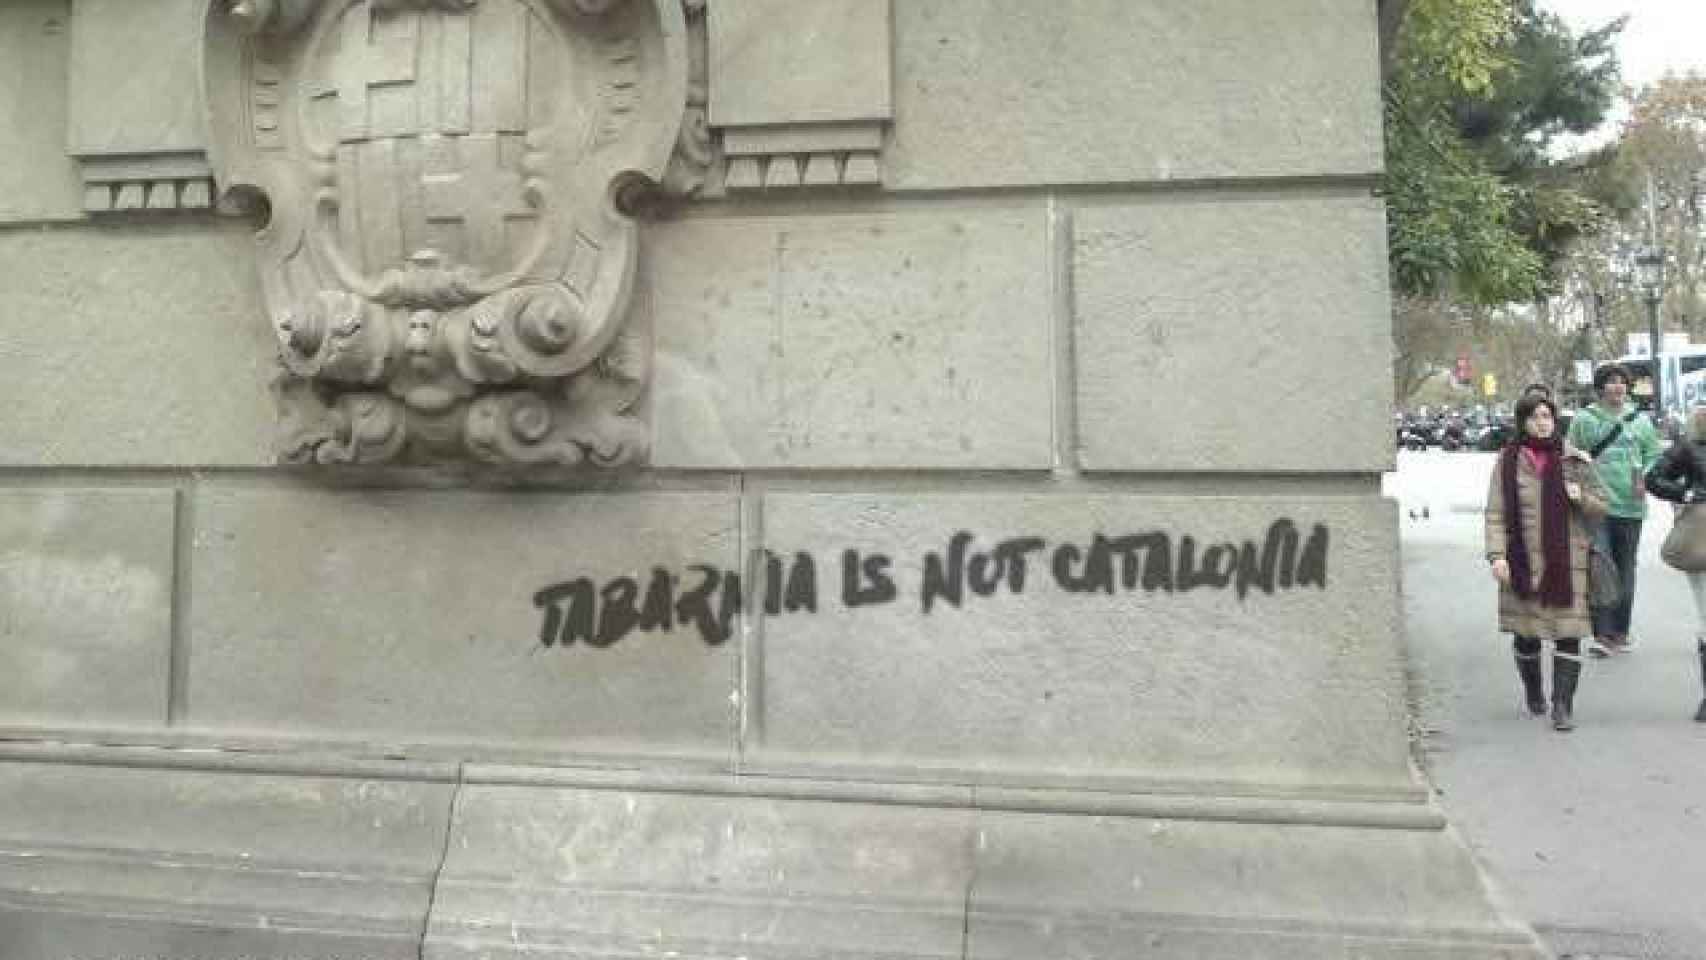 Una pintada en Barcelona reivindica que Tabarnia no es Cataluña